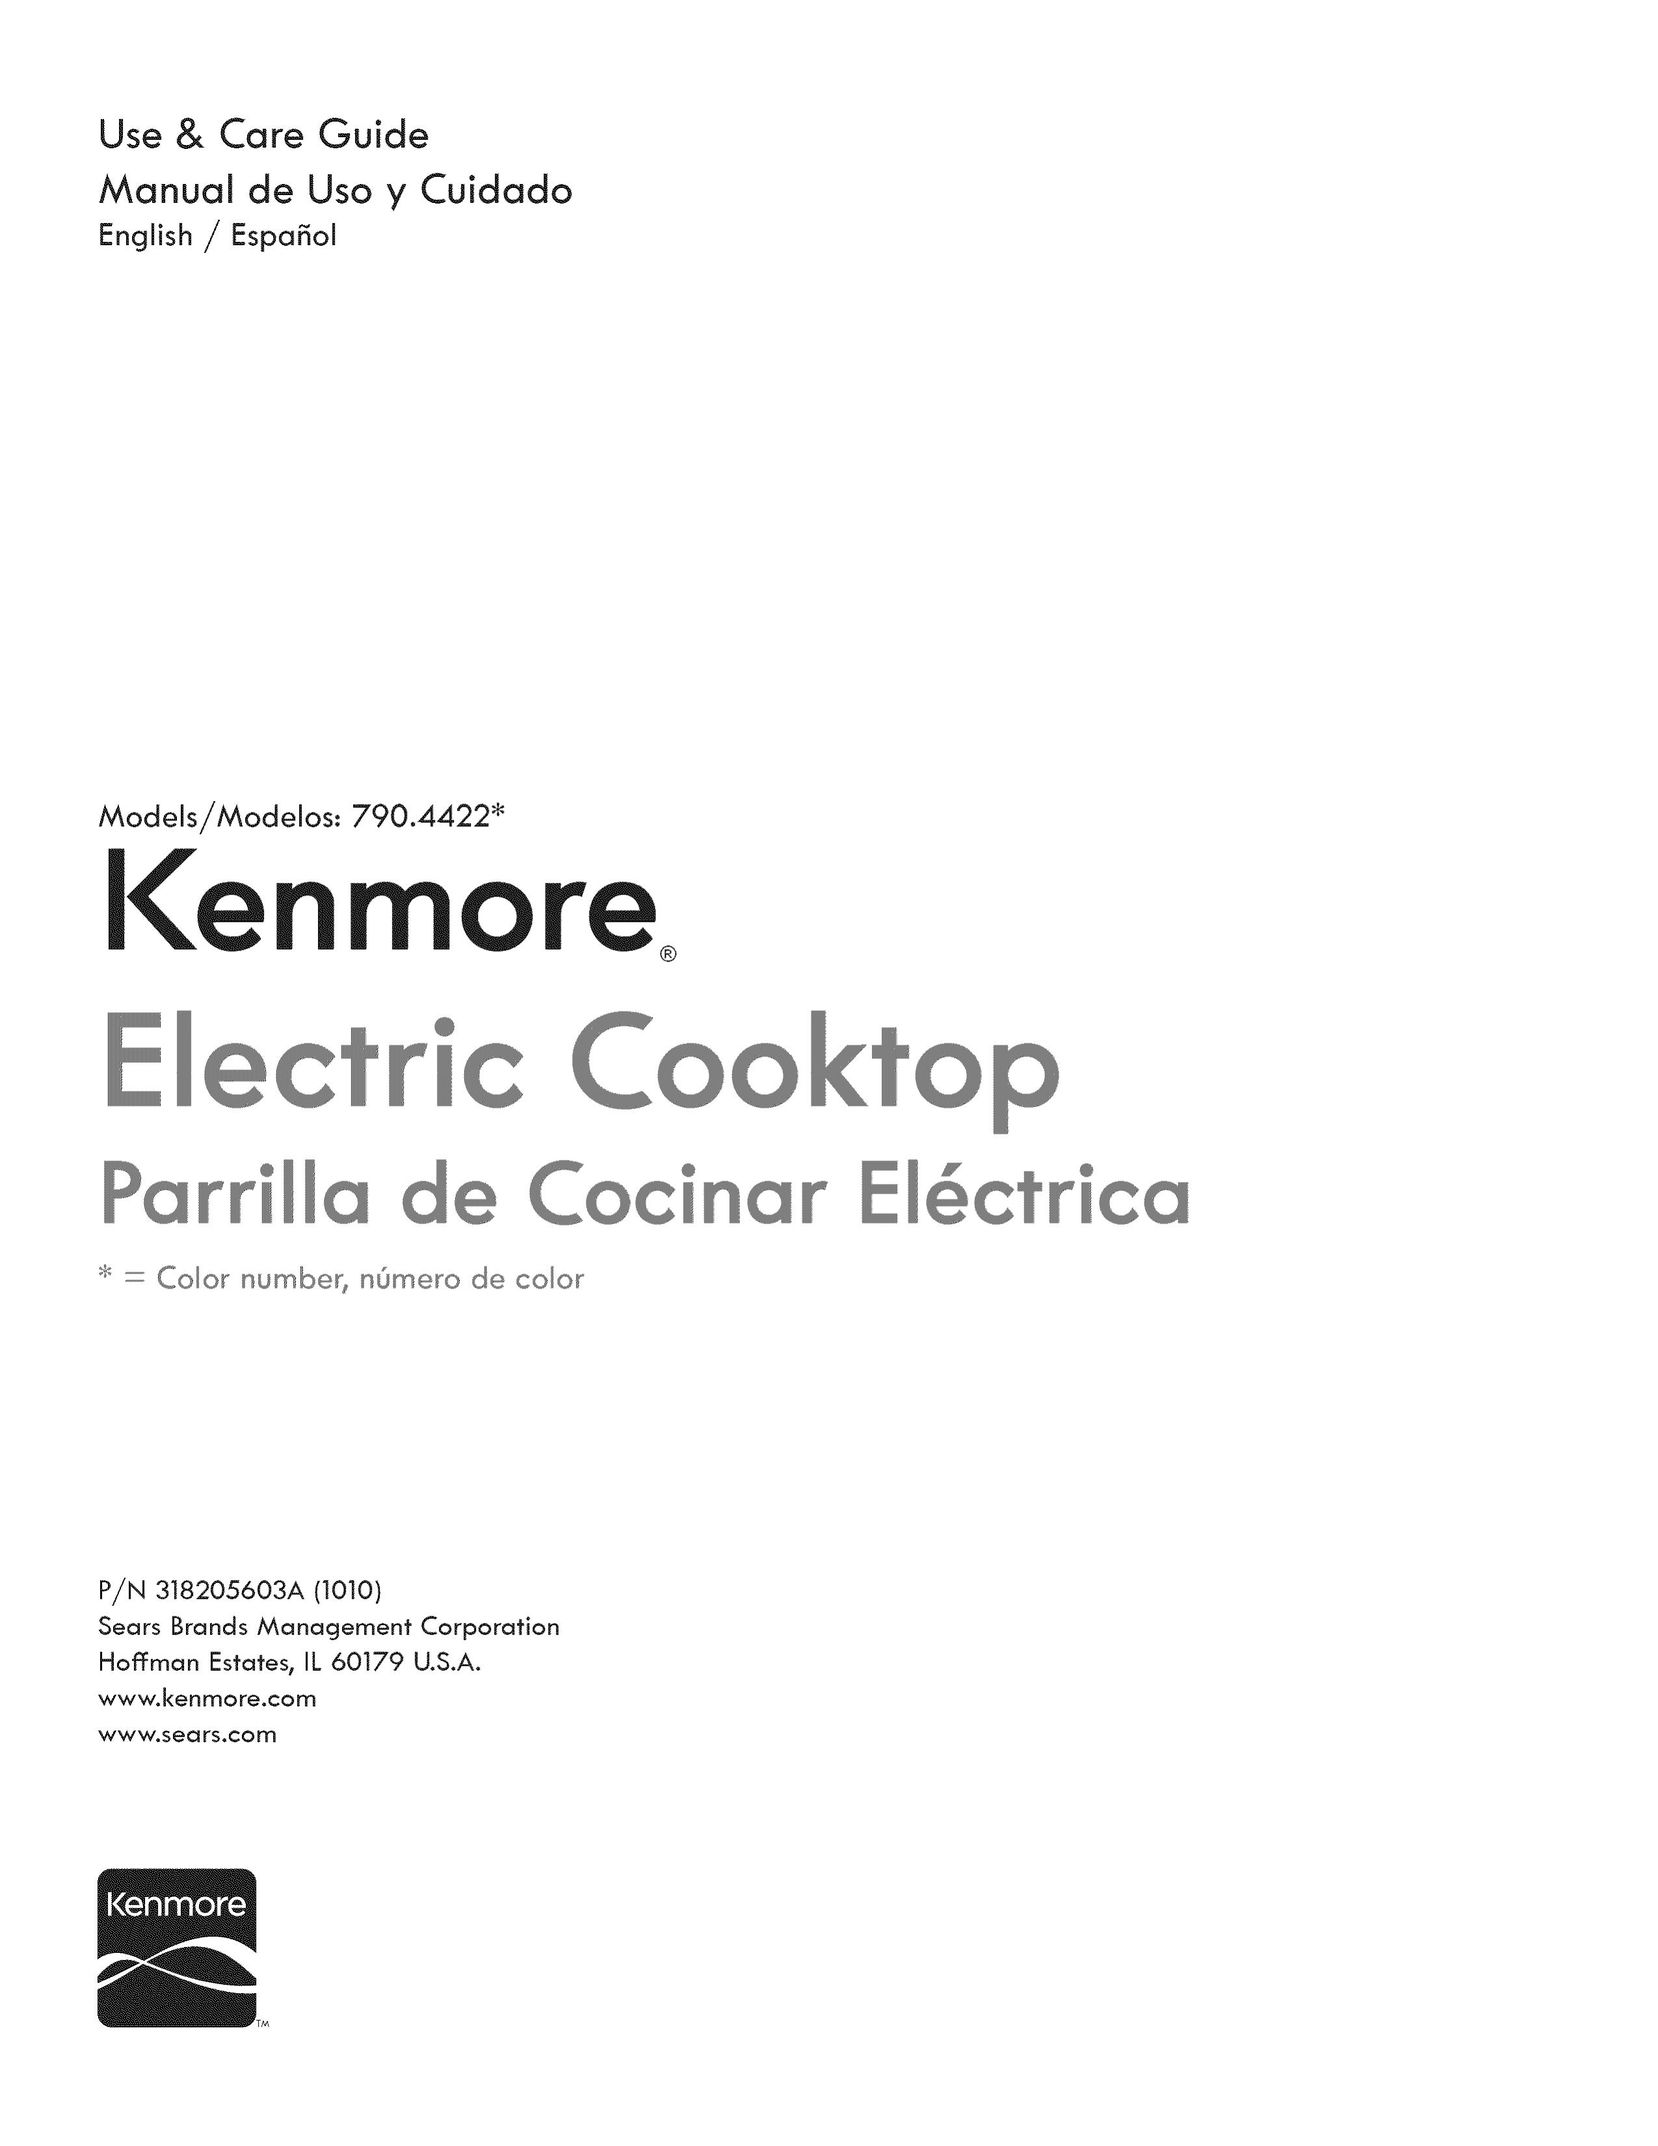 Kenmore 790.4422 Blender User Manual